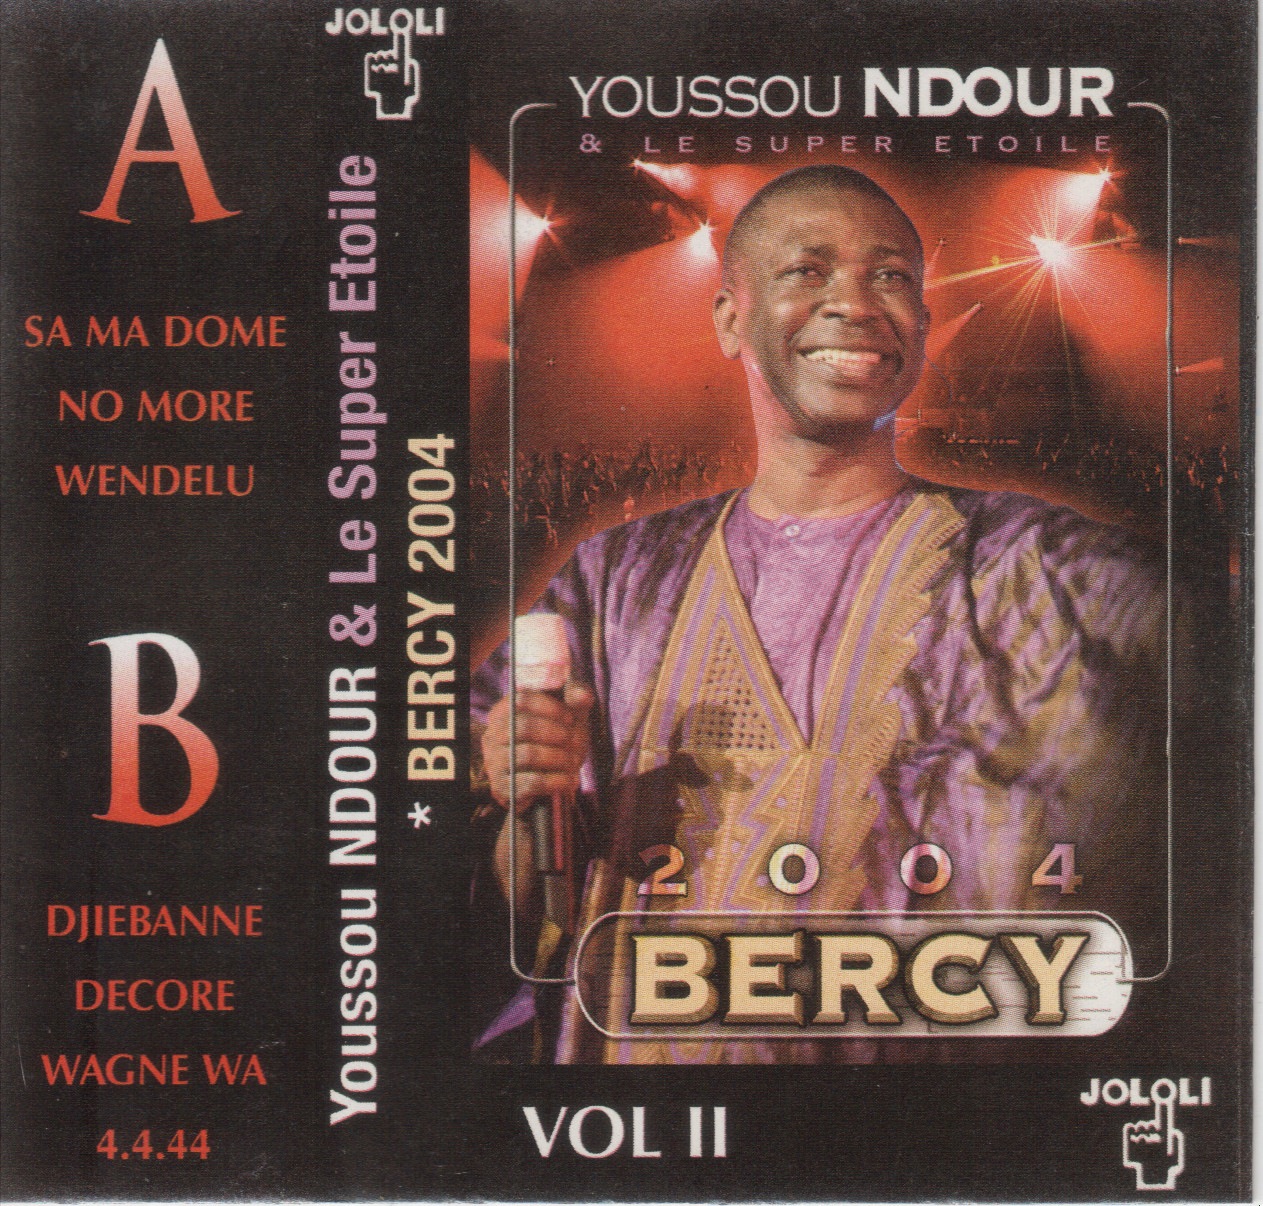 Youssou Ndour & Le Super Etoile : Bercy  Vol.2 (2004) Cover+2